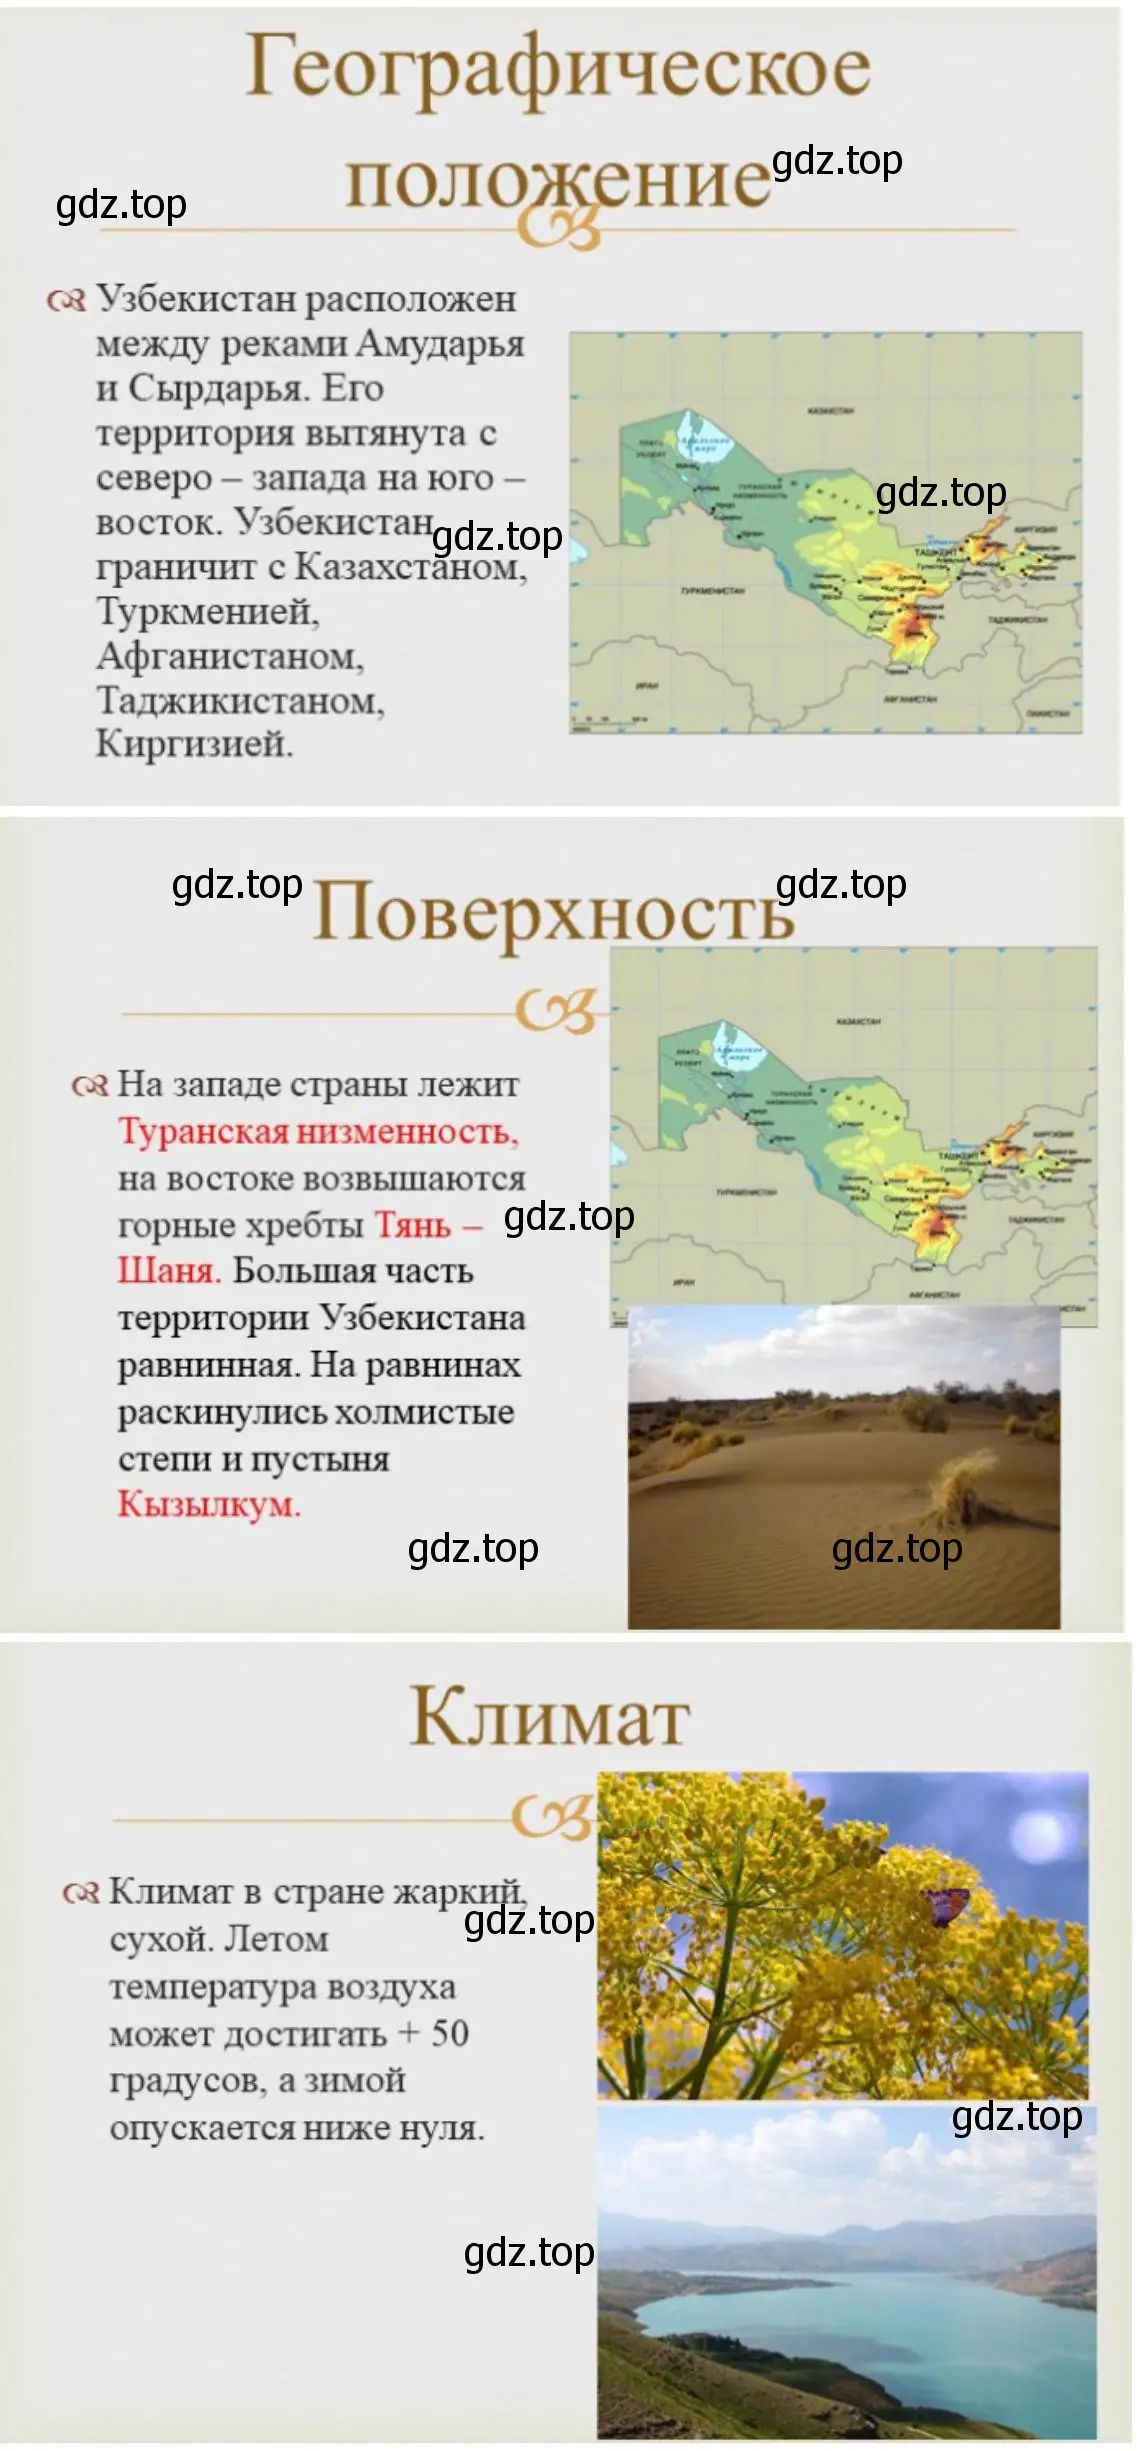 Презентация об одной из стран Центральной Азии «Узбекистан»